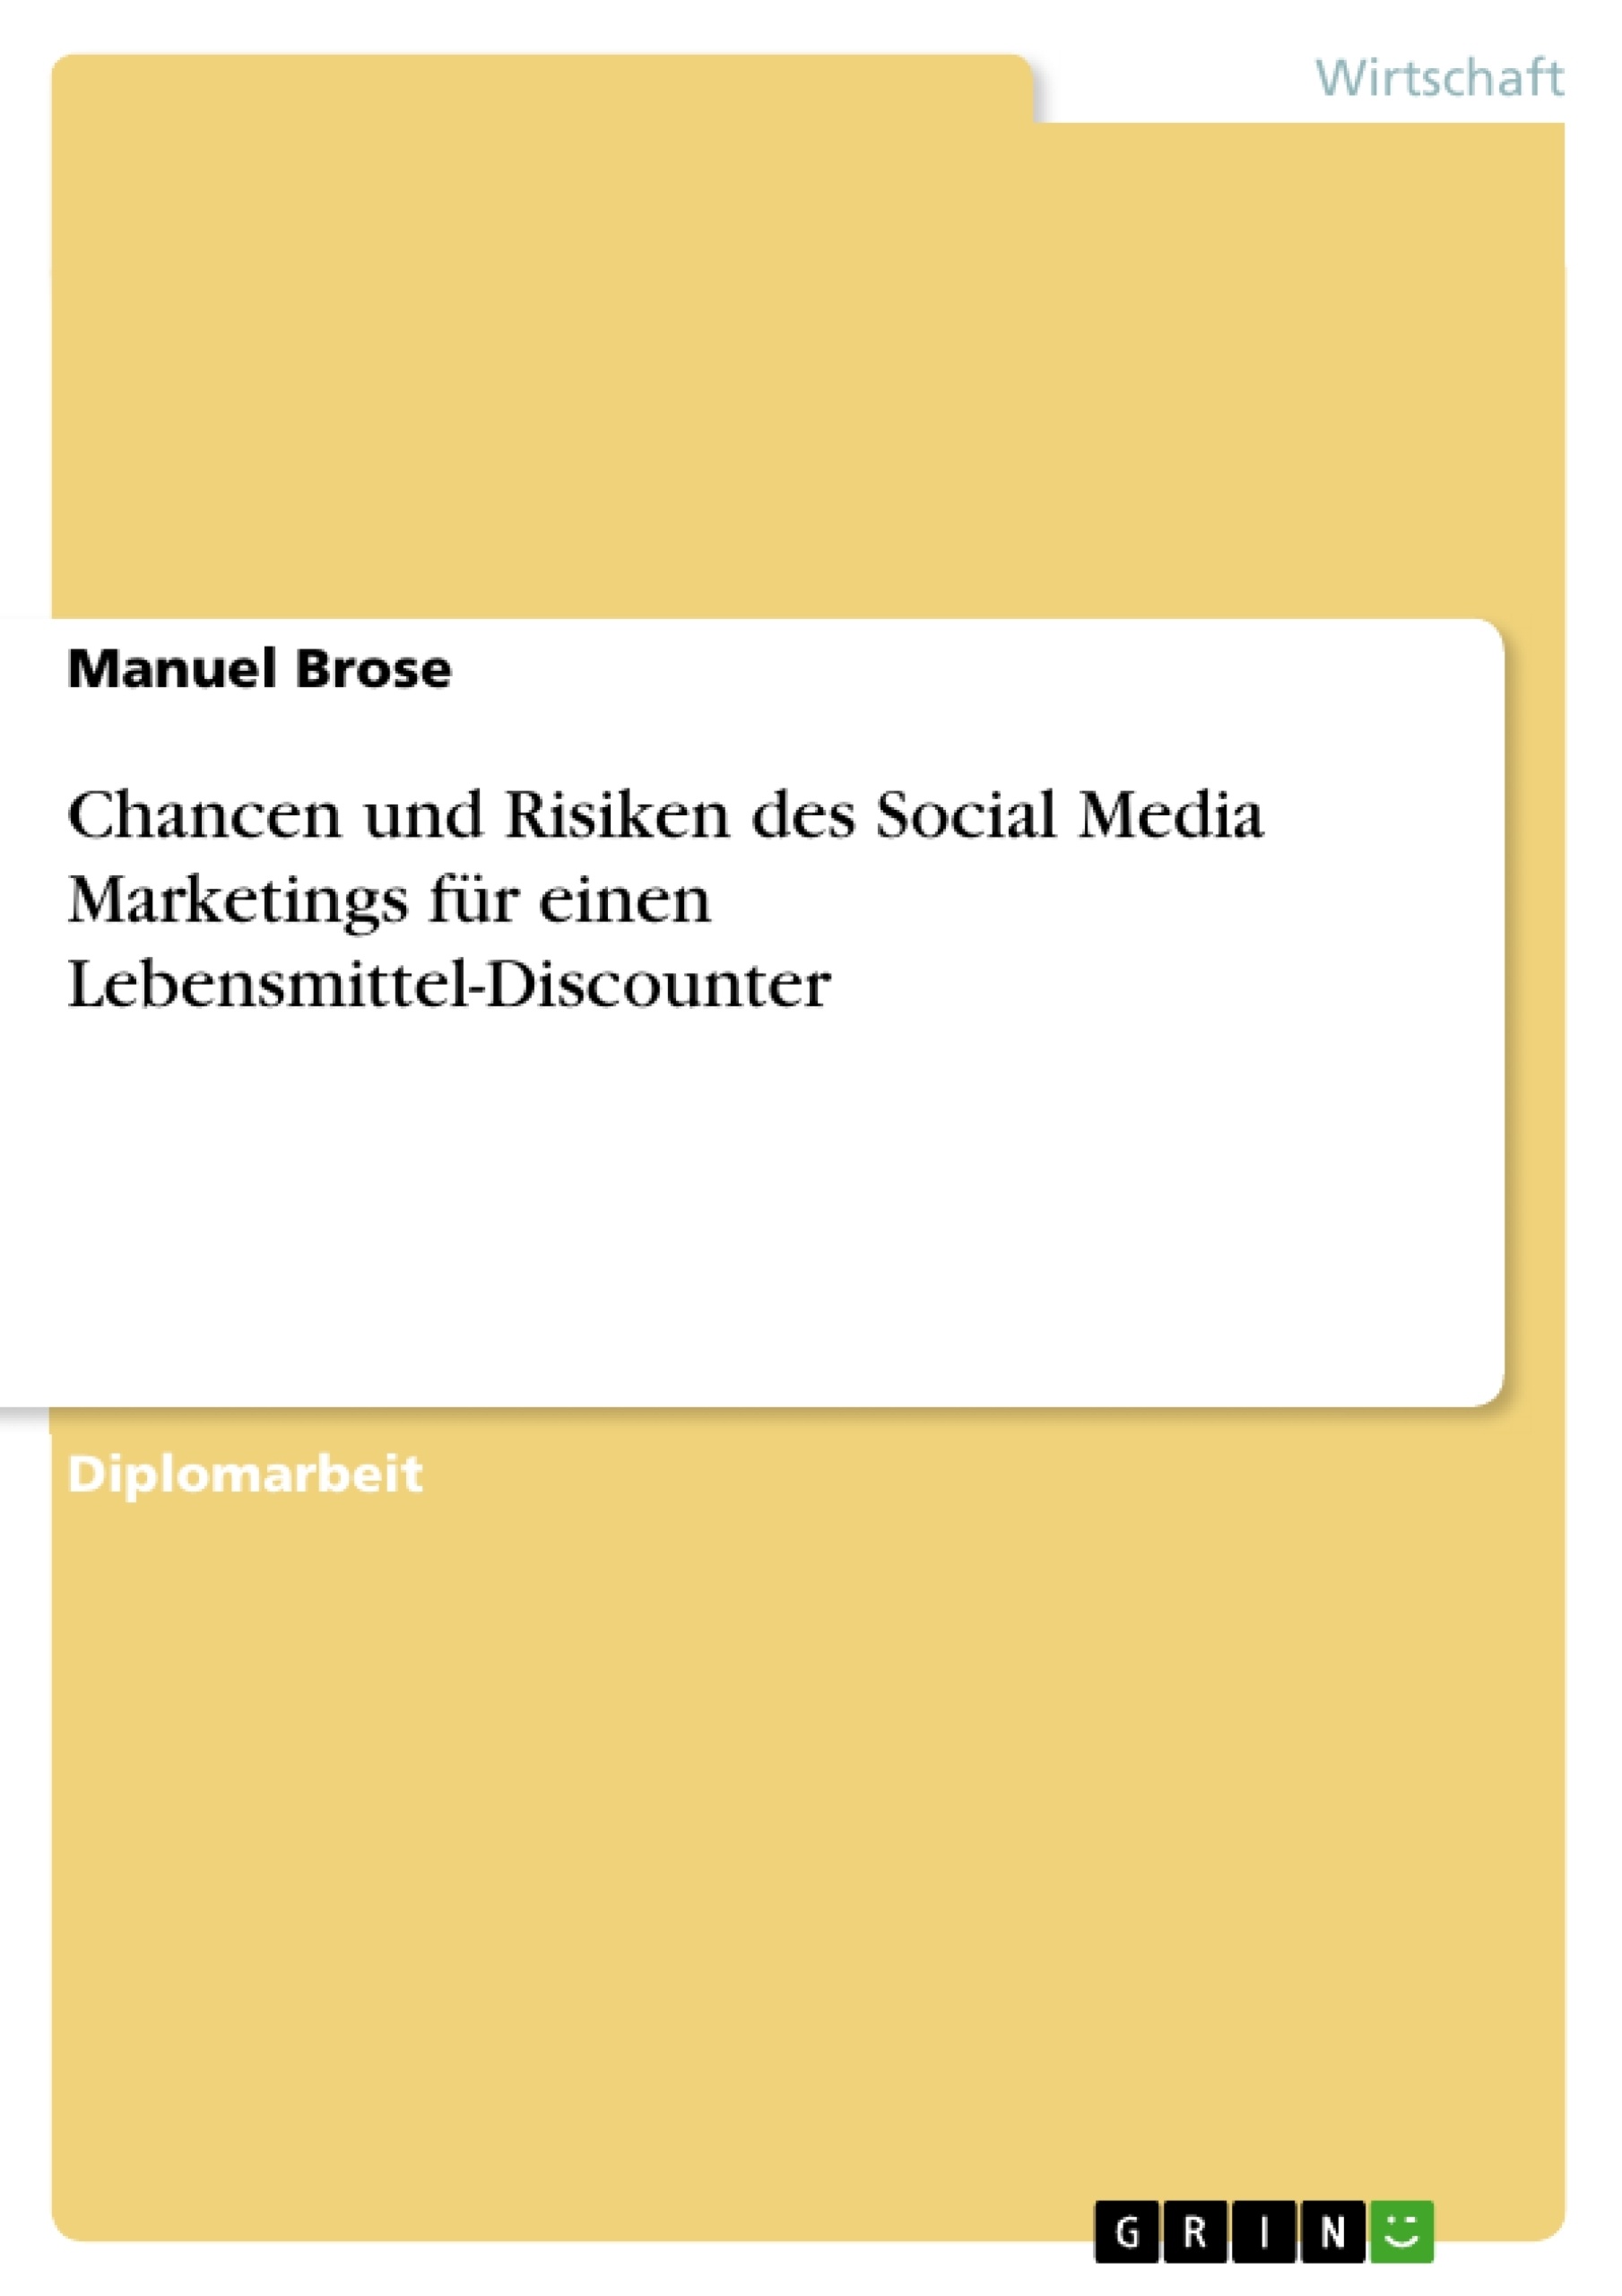 Title: Chancen und Risiken des Social Media Marketings für einen Lebensmittel-Discounter